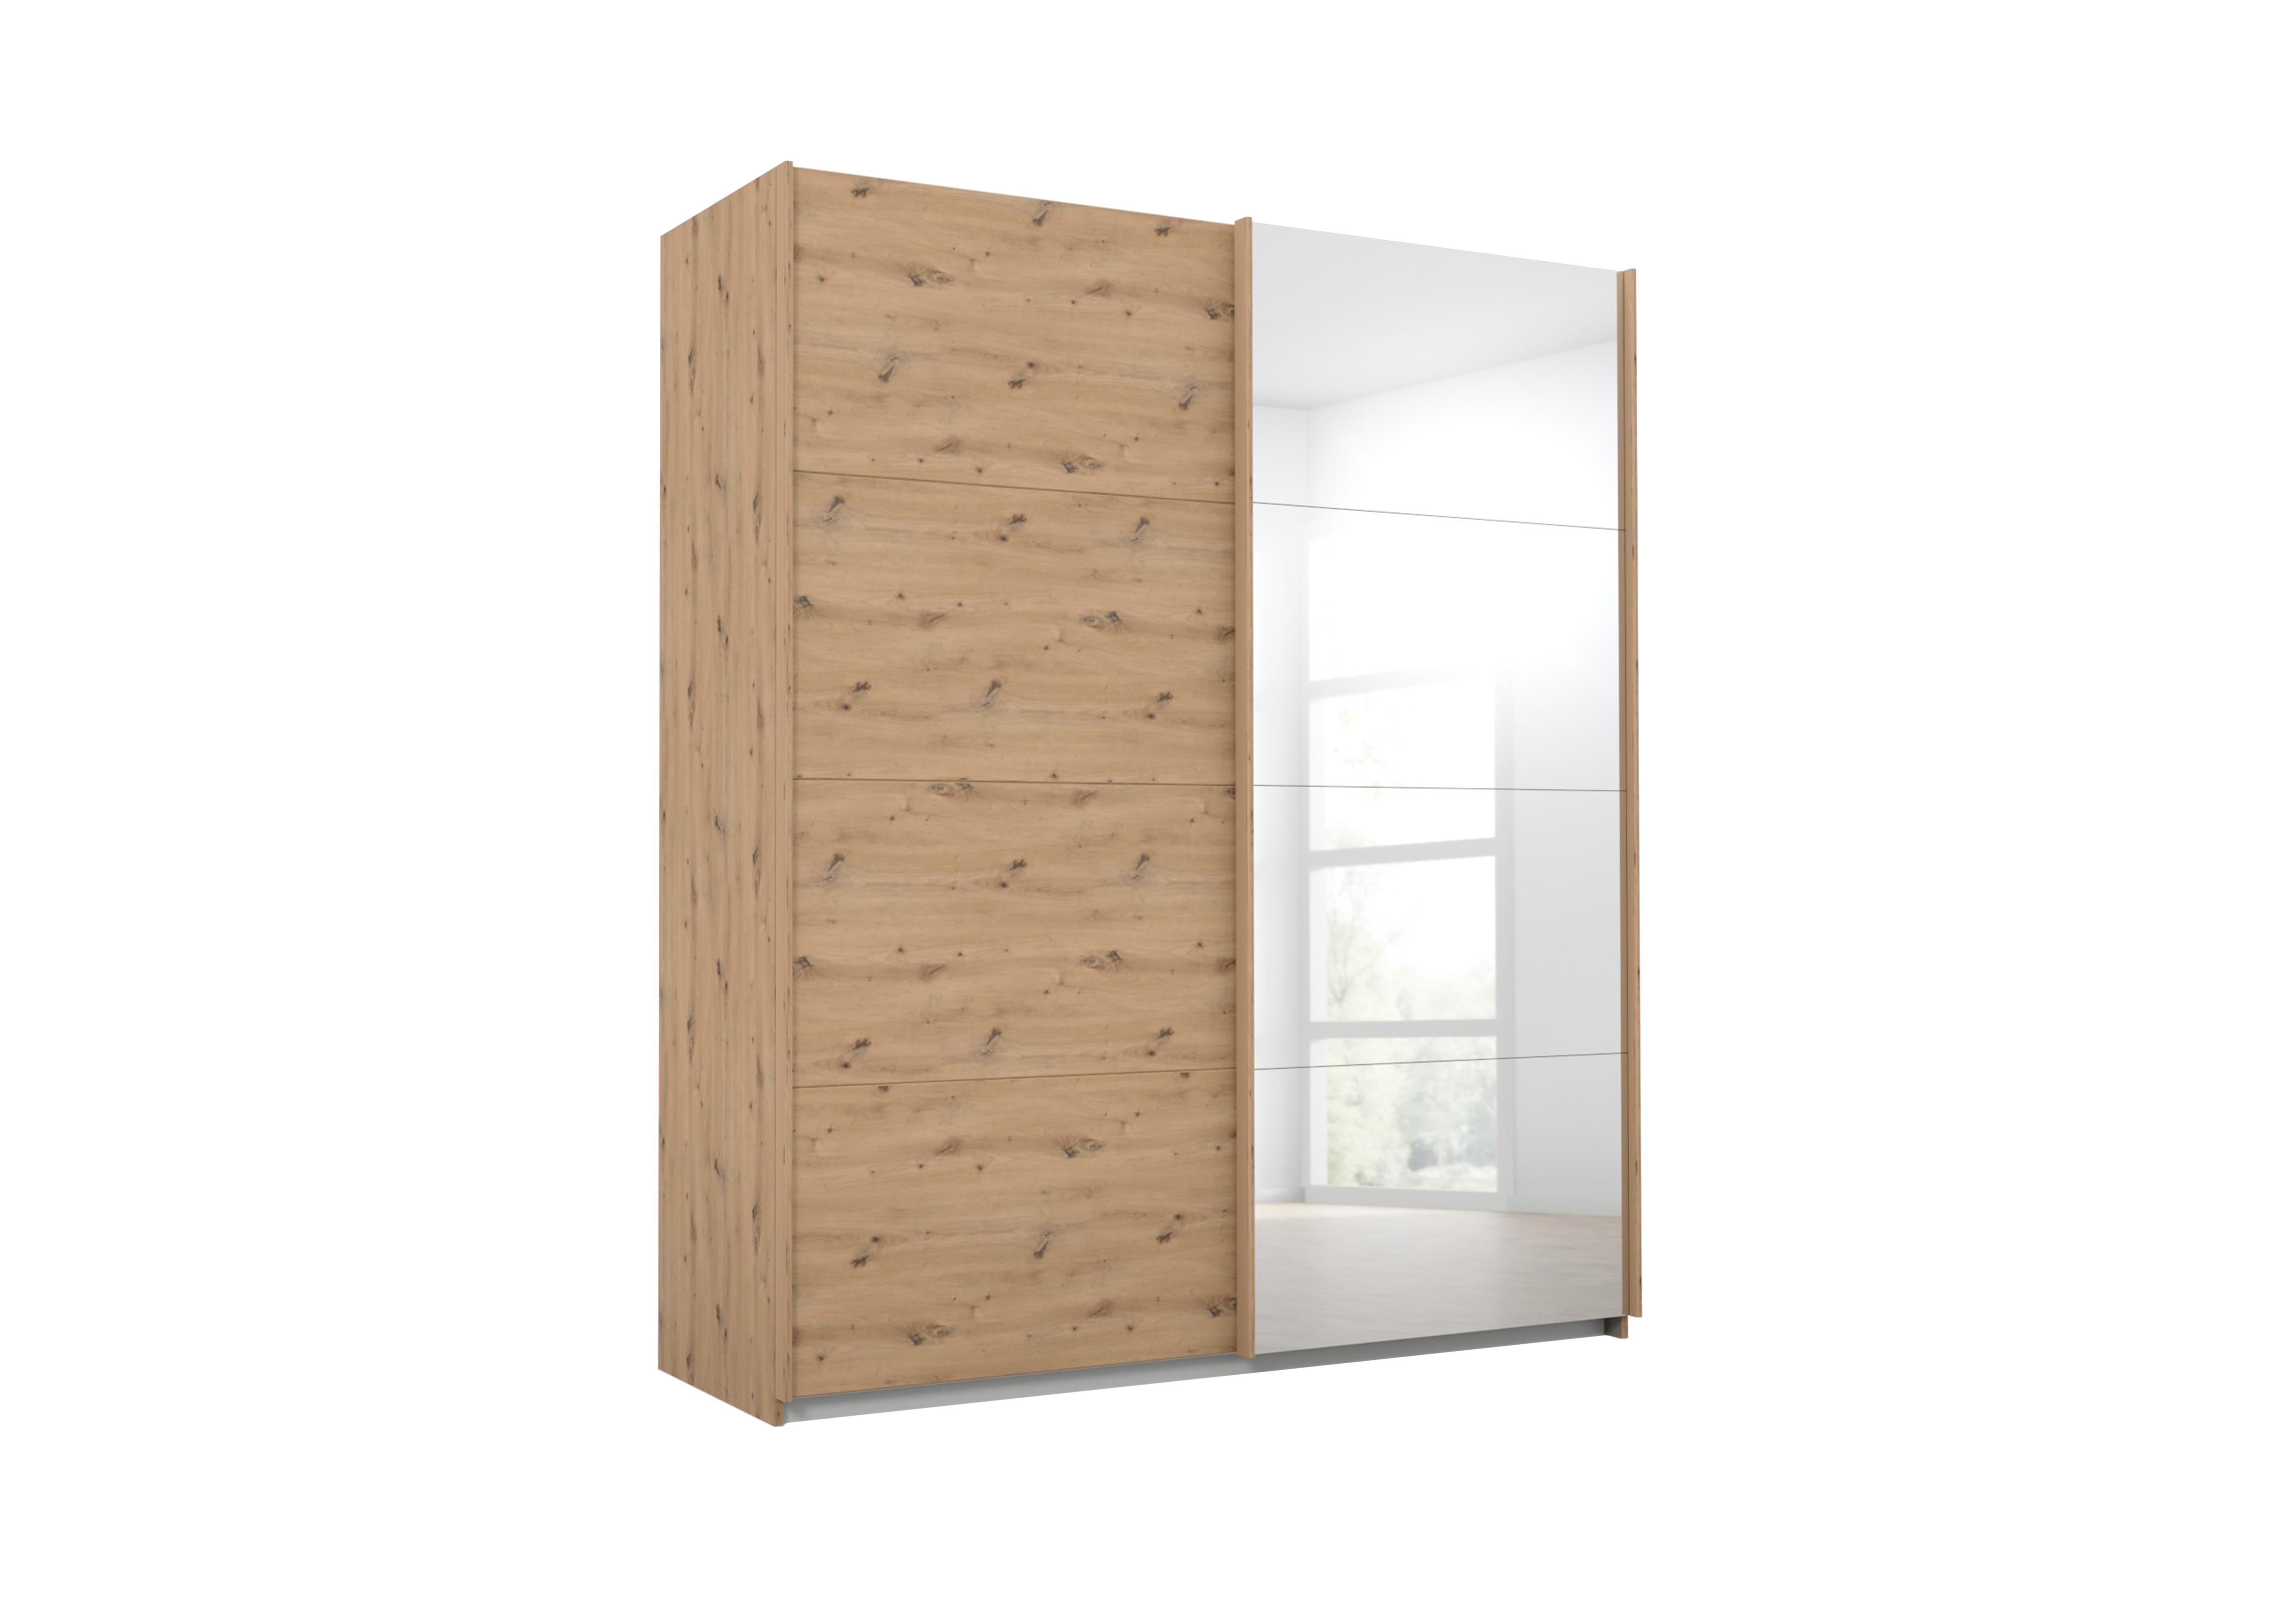 Lima 181cm 2 Door Sliding Wardrobe with 1 Decor Door and 1 Mirror Door 210cm Tall in Ag350art Oak/Art Oak on Furniture Village